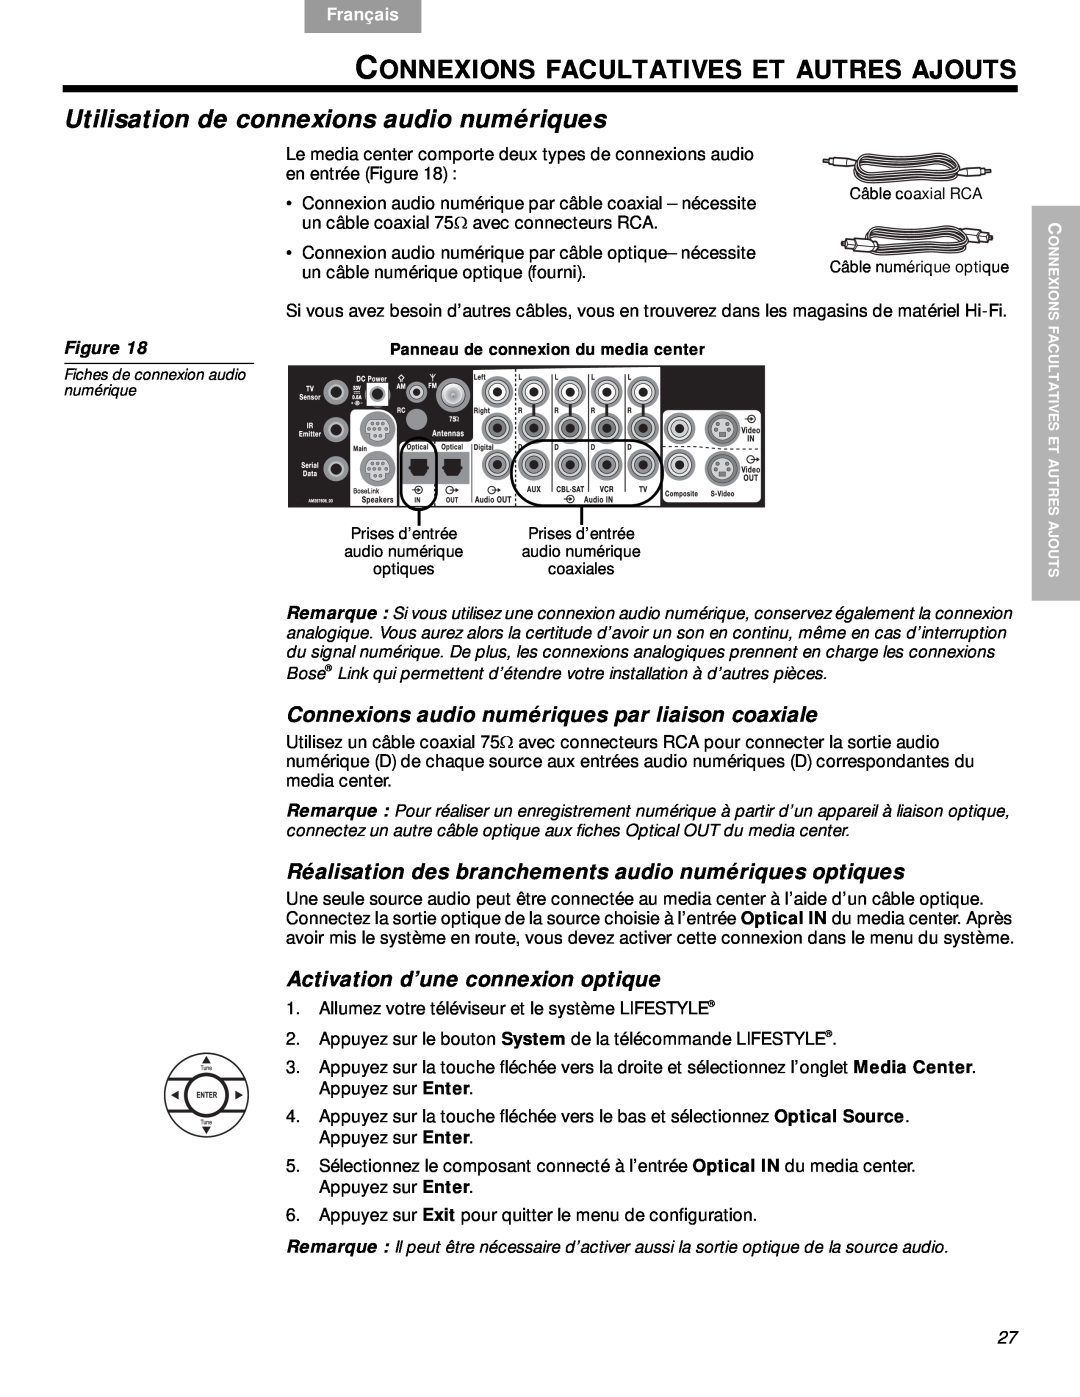 Bose VS-2 Connexions Facultatives Et Autres Ajouts, Utilisation de connexions audio numériques, English, Español, Français 